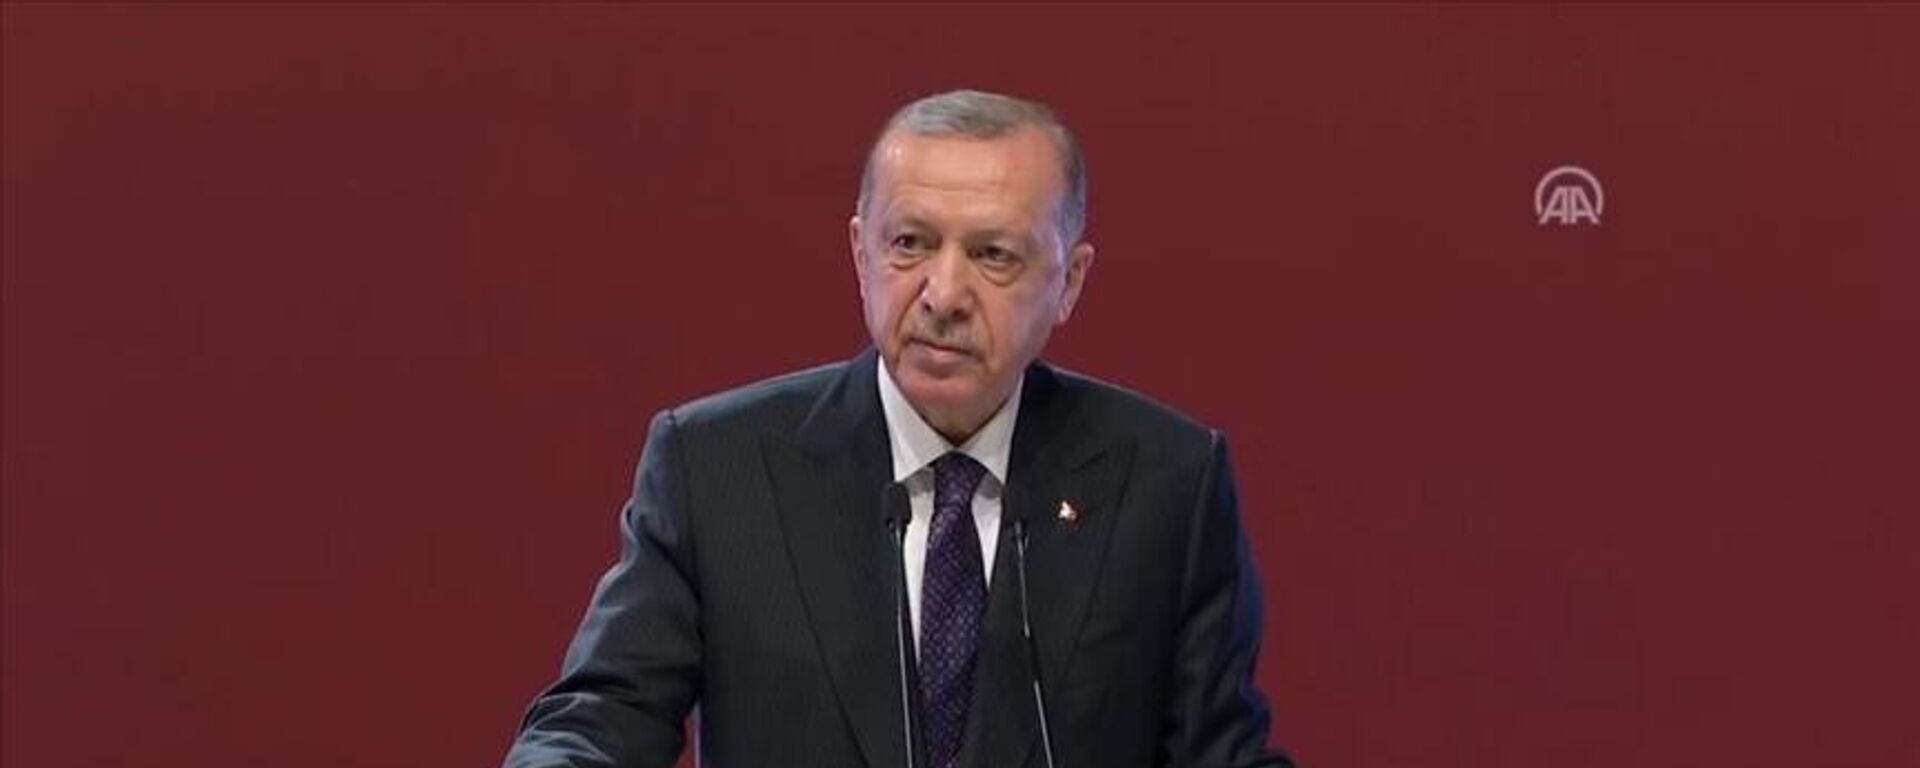 Cumhurbaşkanı Erdoğan: Kimse Türk Devletleri Teşkilatı'ndan rahatsız olmamalı - Sputnik Türkiye, 1920, 12.11.2021